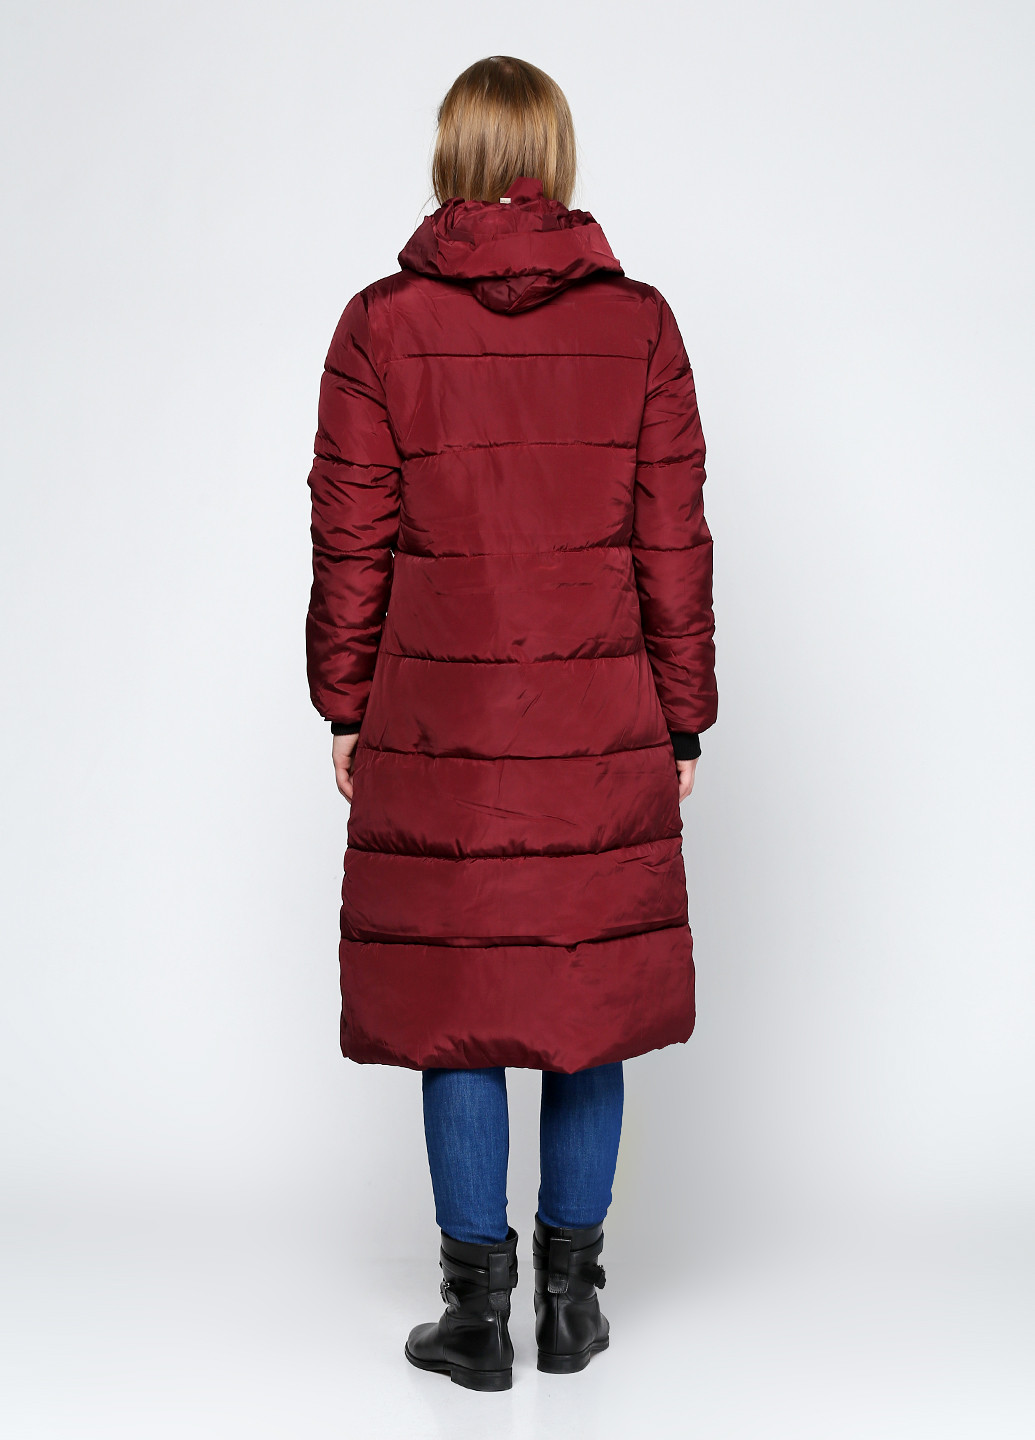 Бордовая зимняя куртка Dupin